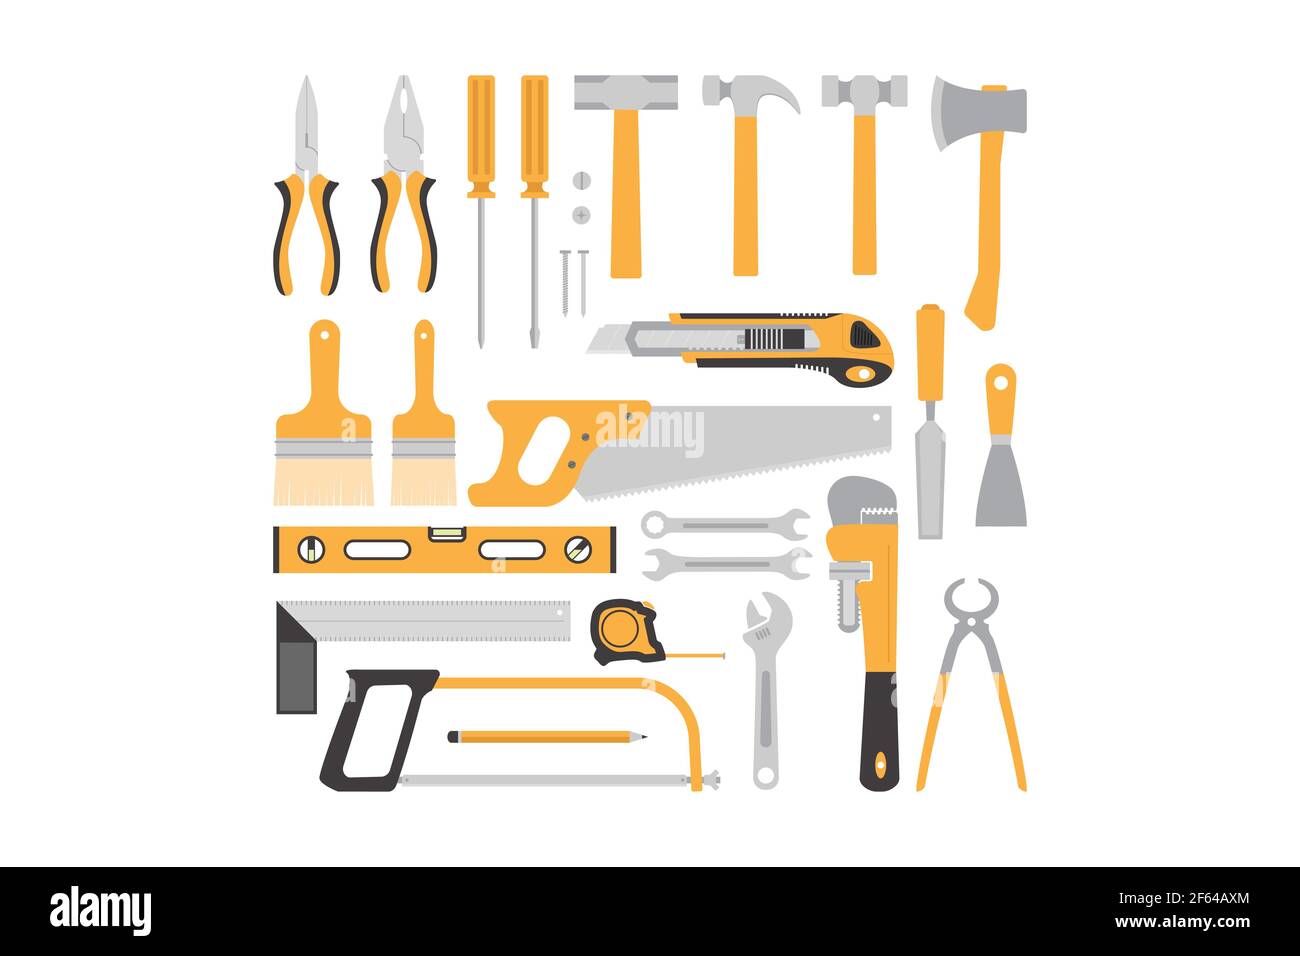 Schreinerei Werkzeuge Flat Design Konzept, gelb Schreinerei Werkzeuge Sammlung isoliert auf weißem Hintergrund Stock Vektor